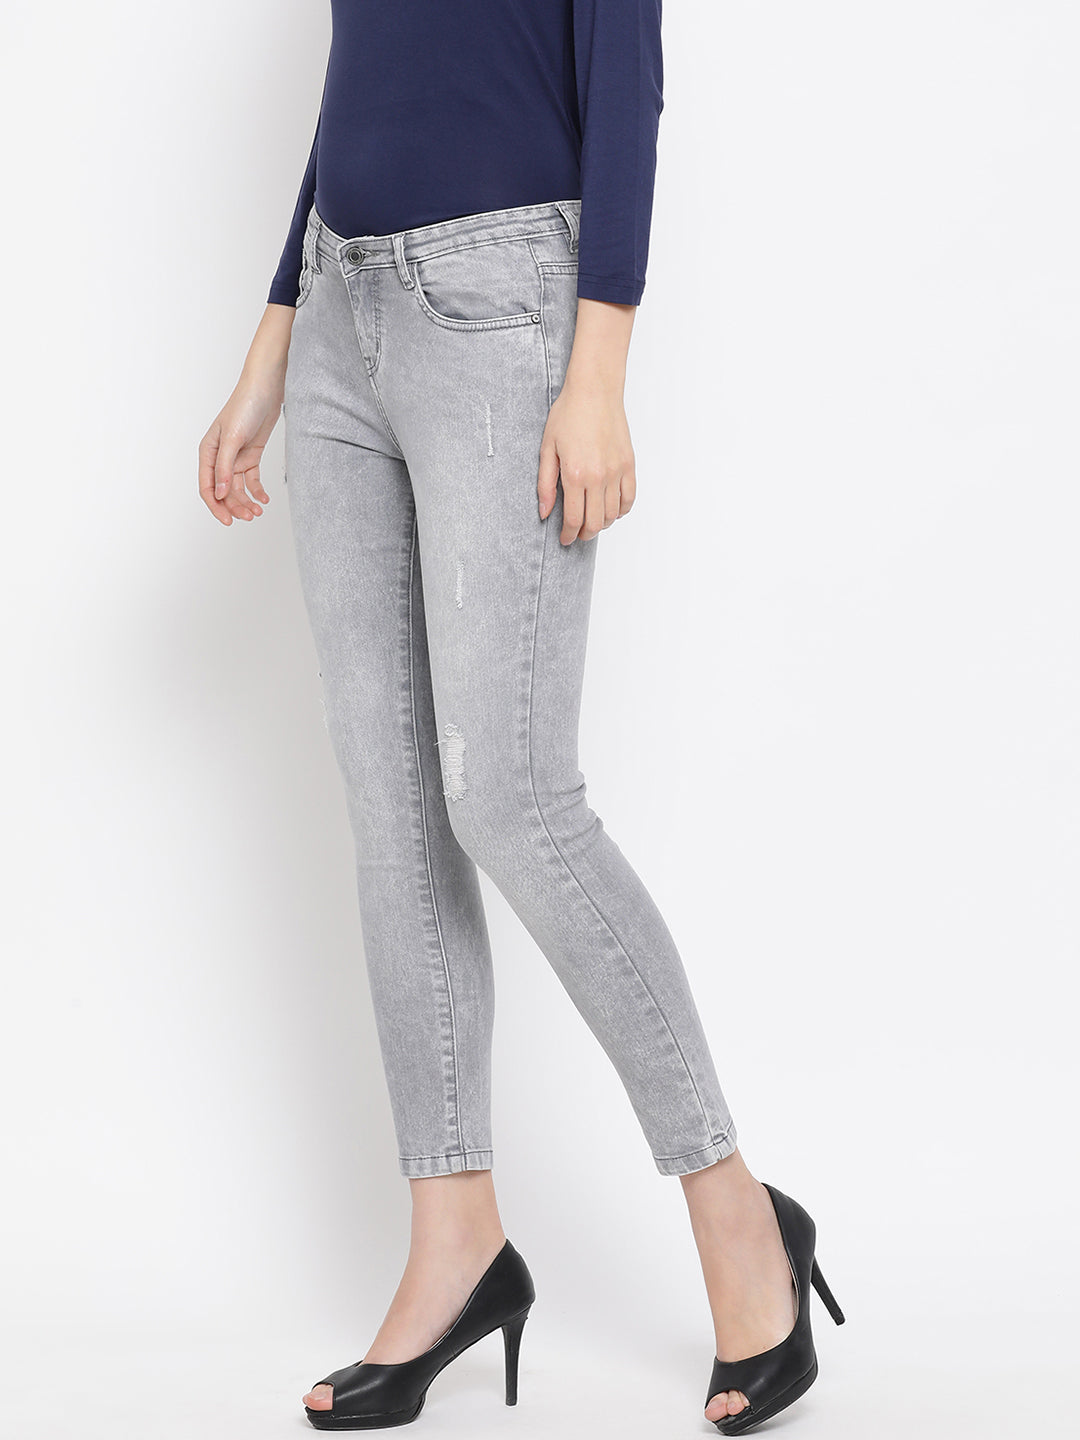 Grey Slim Fit Jeans - Women Jeans